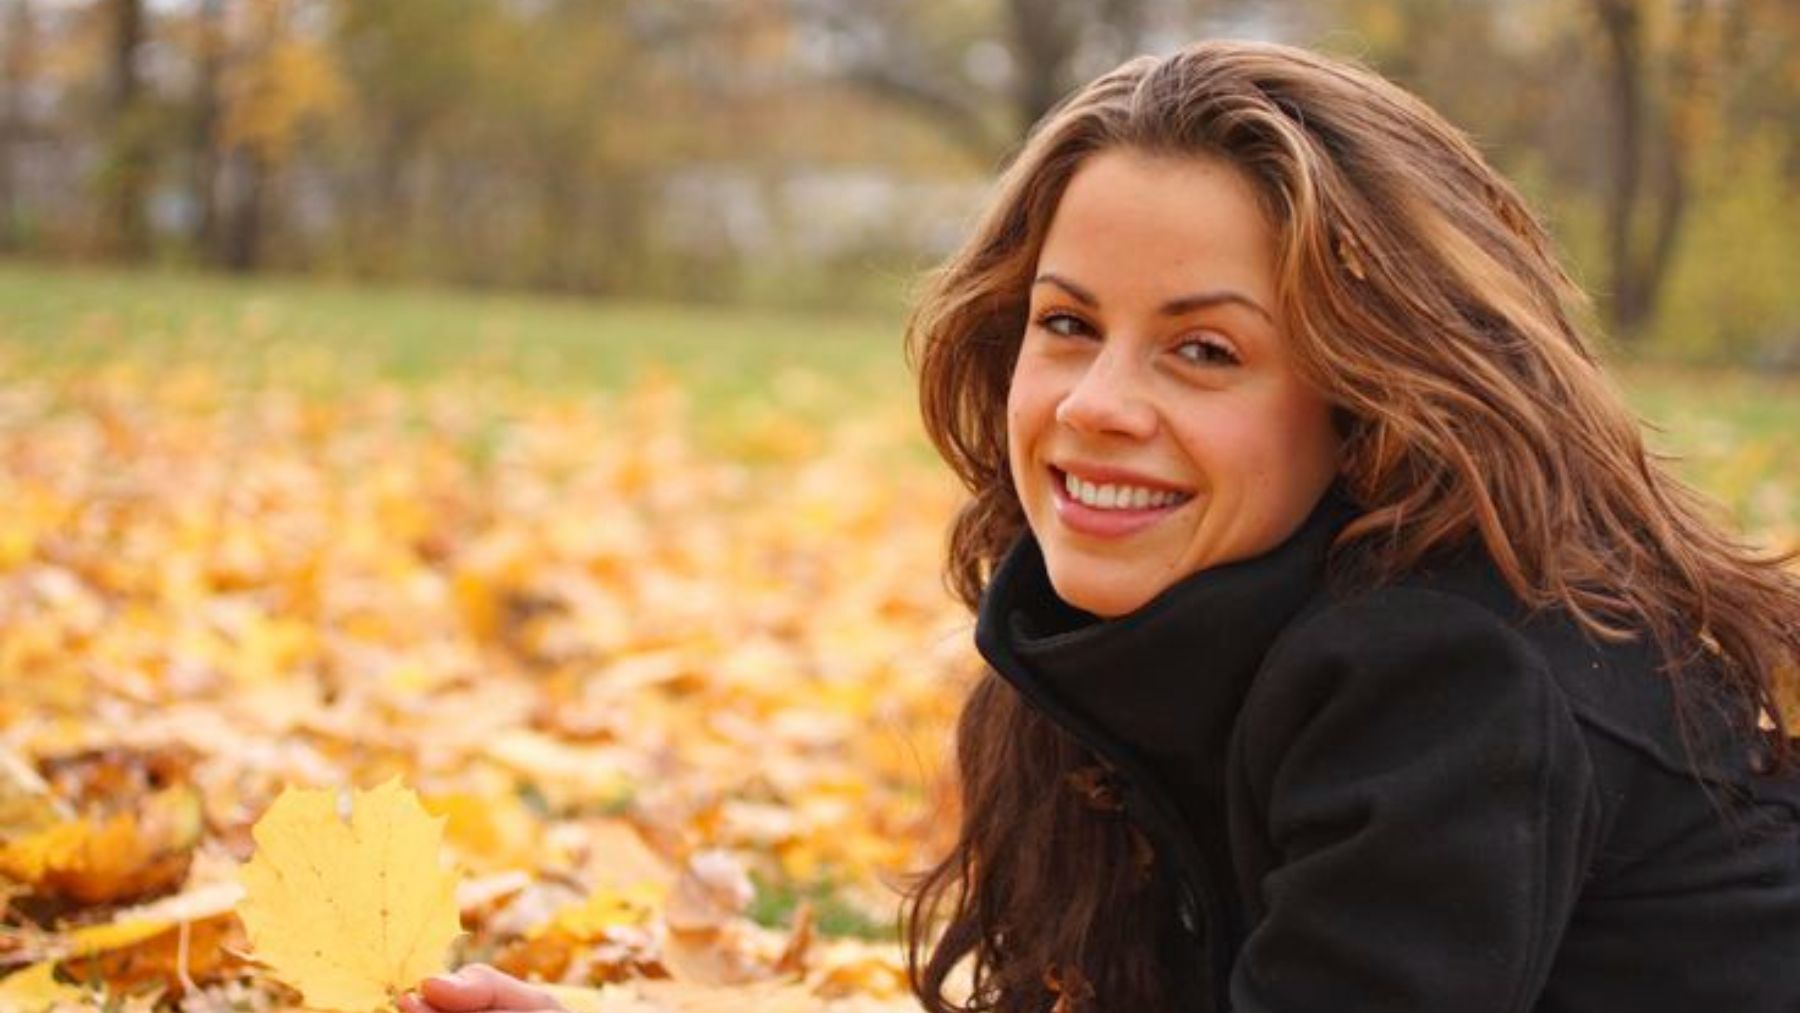 Cómo evitar la caída del cabello en otoño a través de la alimentación